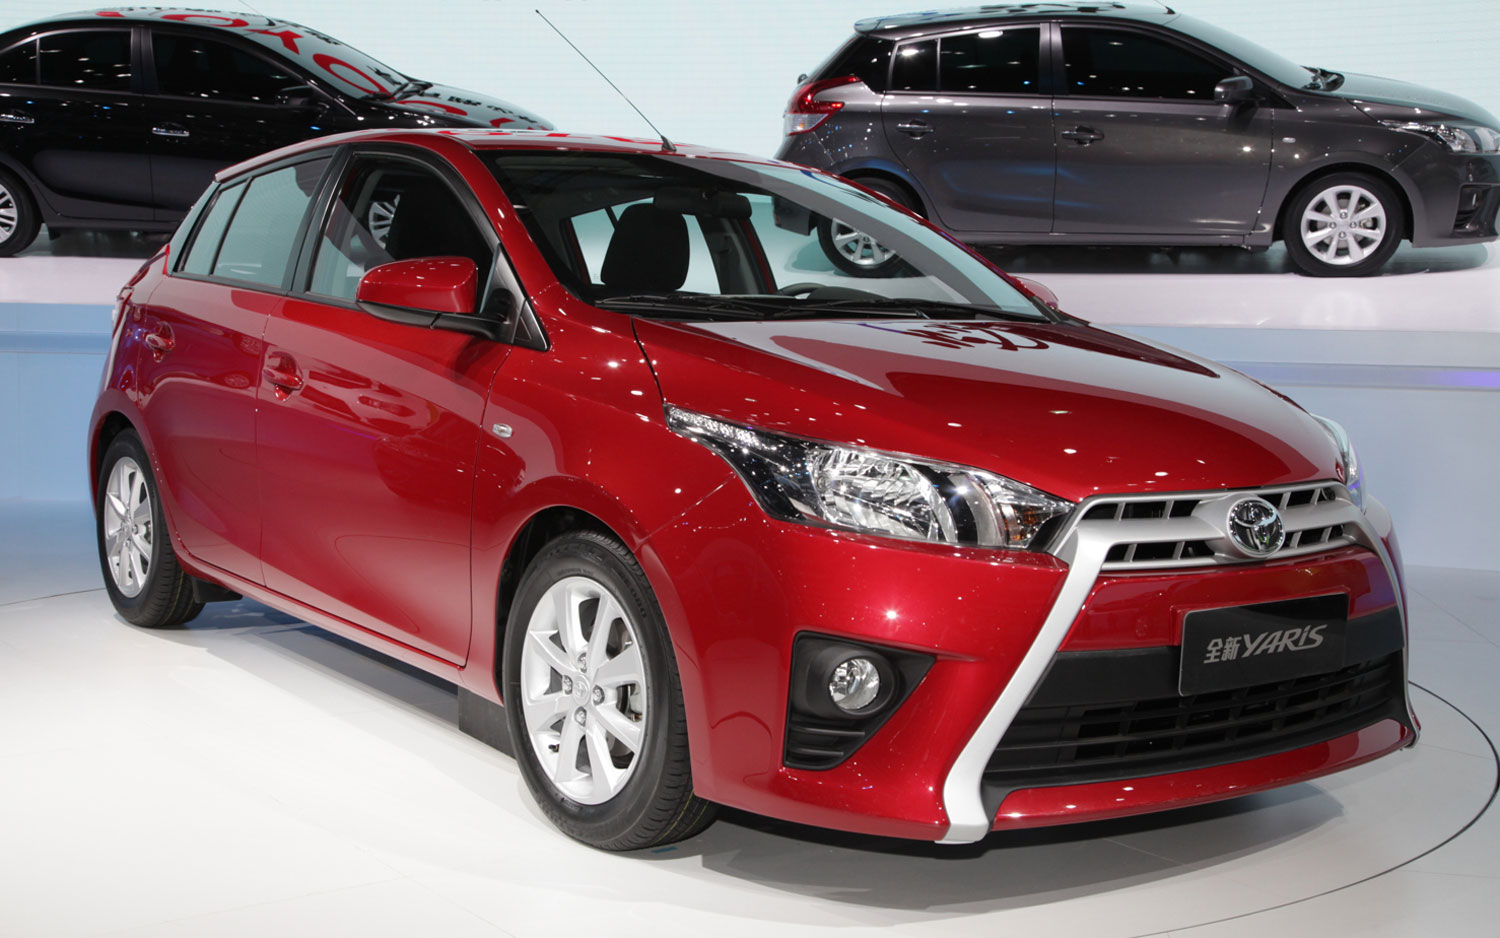 Toyota Yaris Hybrid 2013 User Manual Pdf